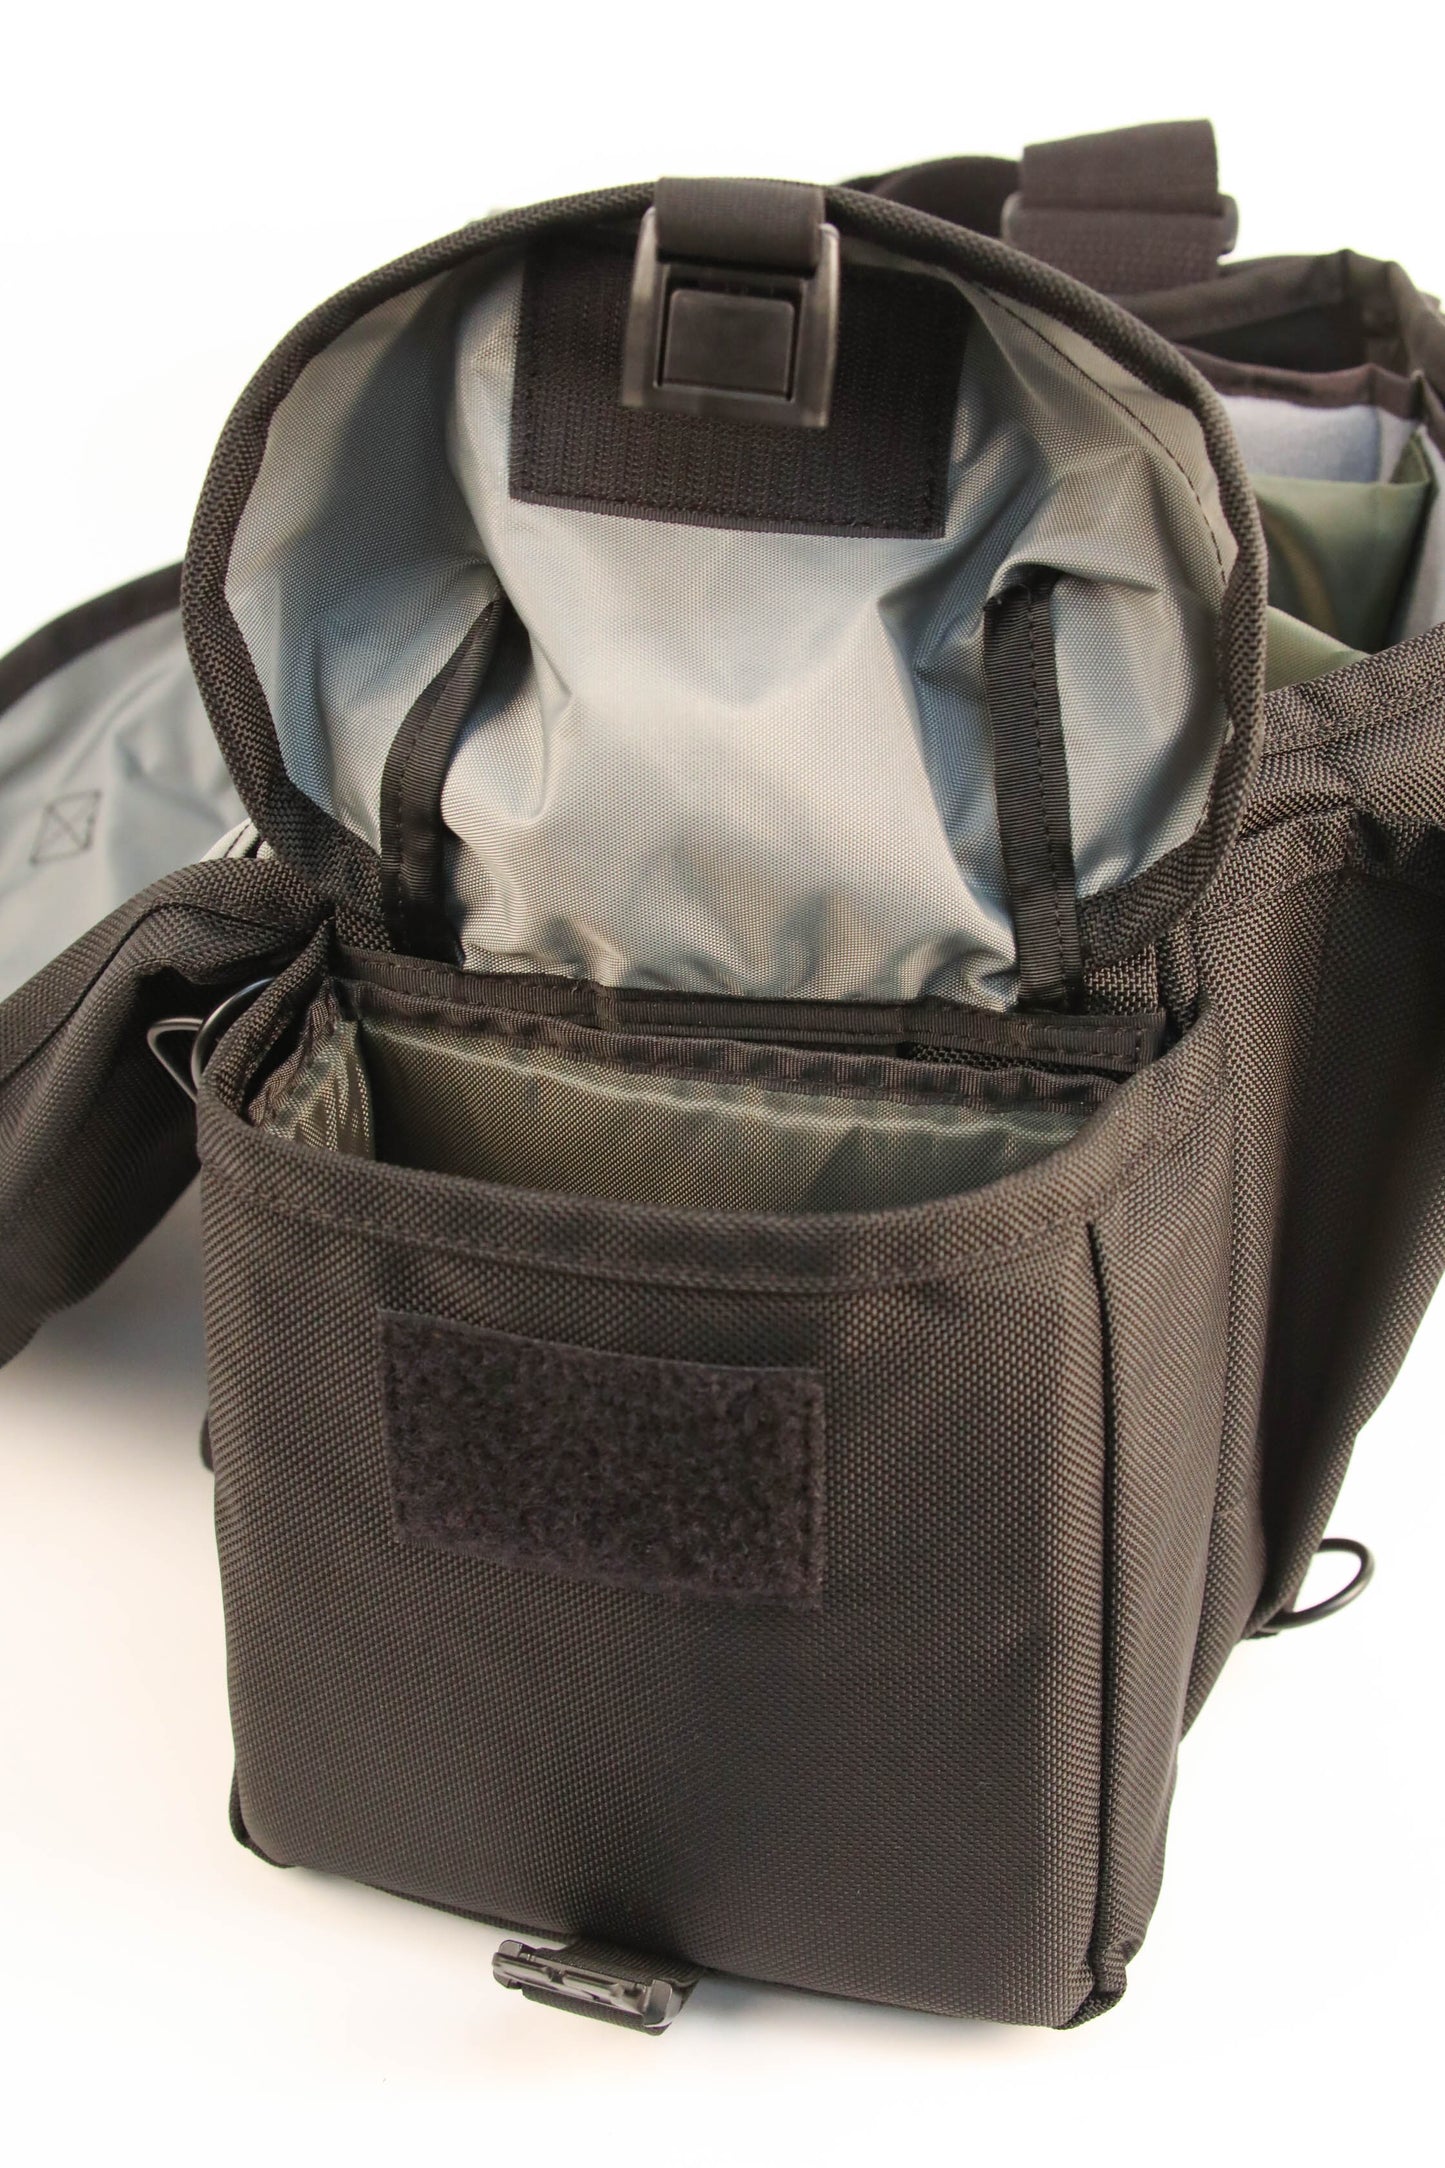 DOMKE J-2 Journalist Shoulder Camera Bag (Black)